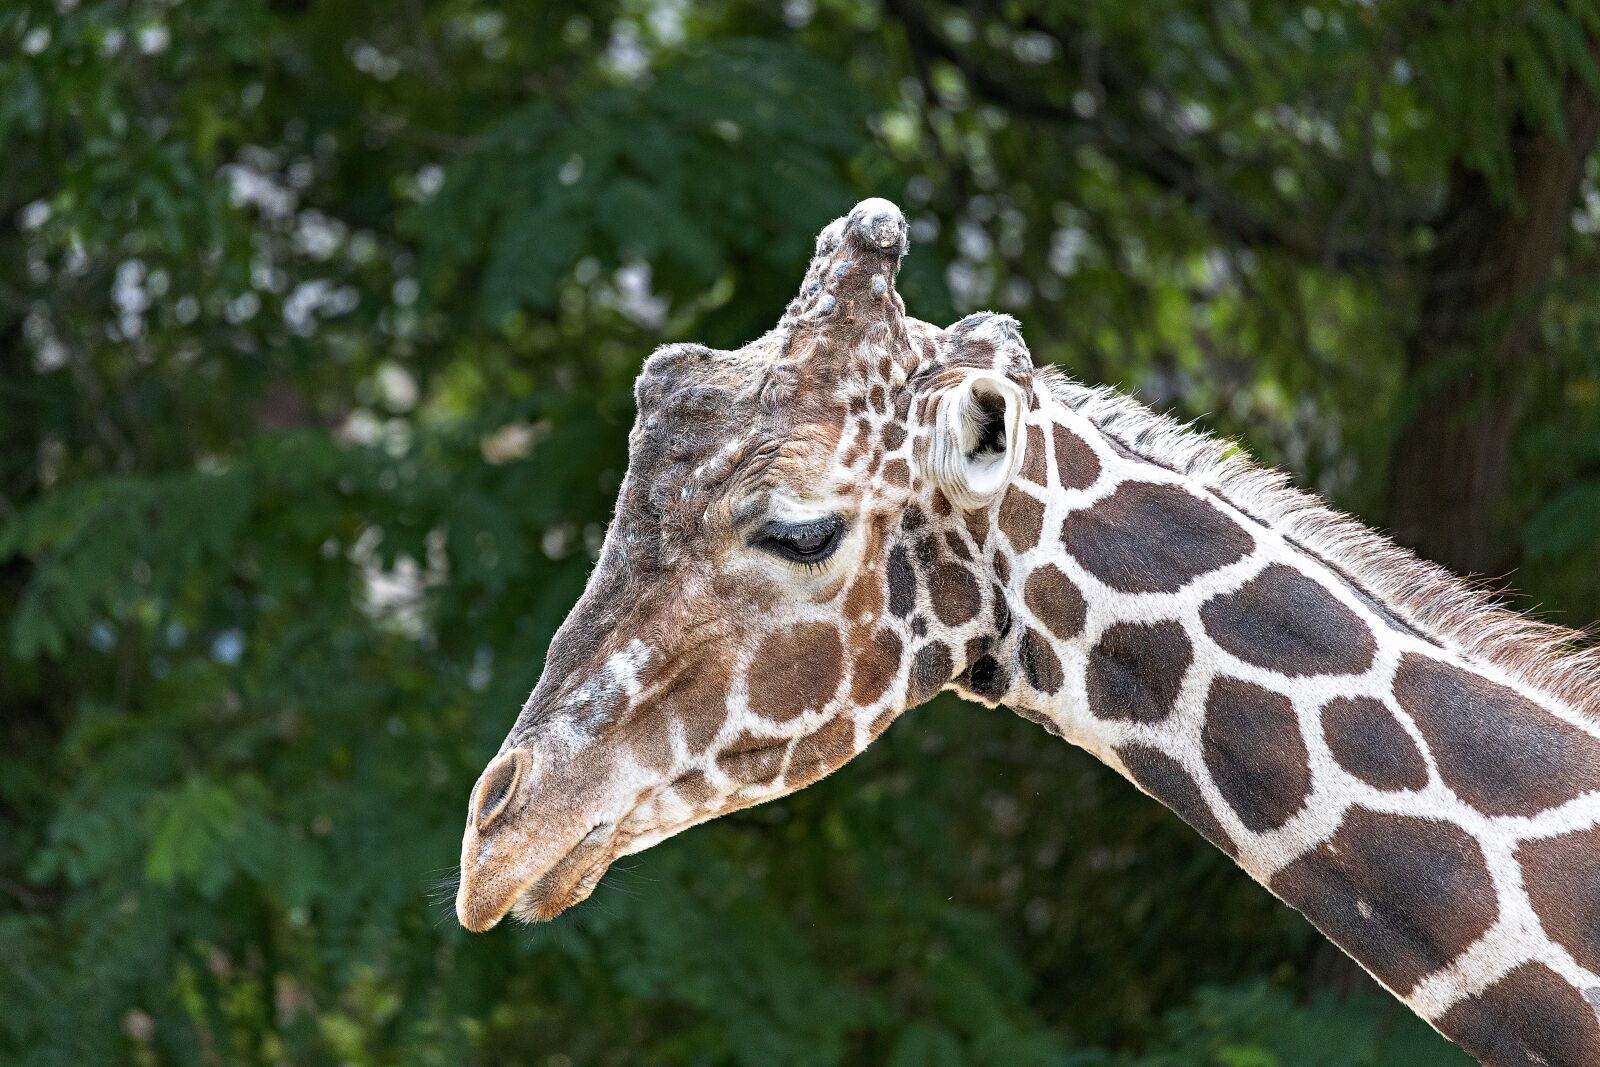 Canon EOS RP sample photo. Giraffe, zoo, animal photography